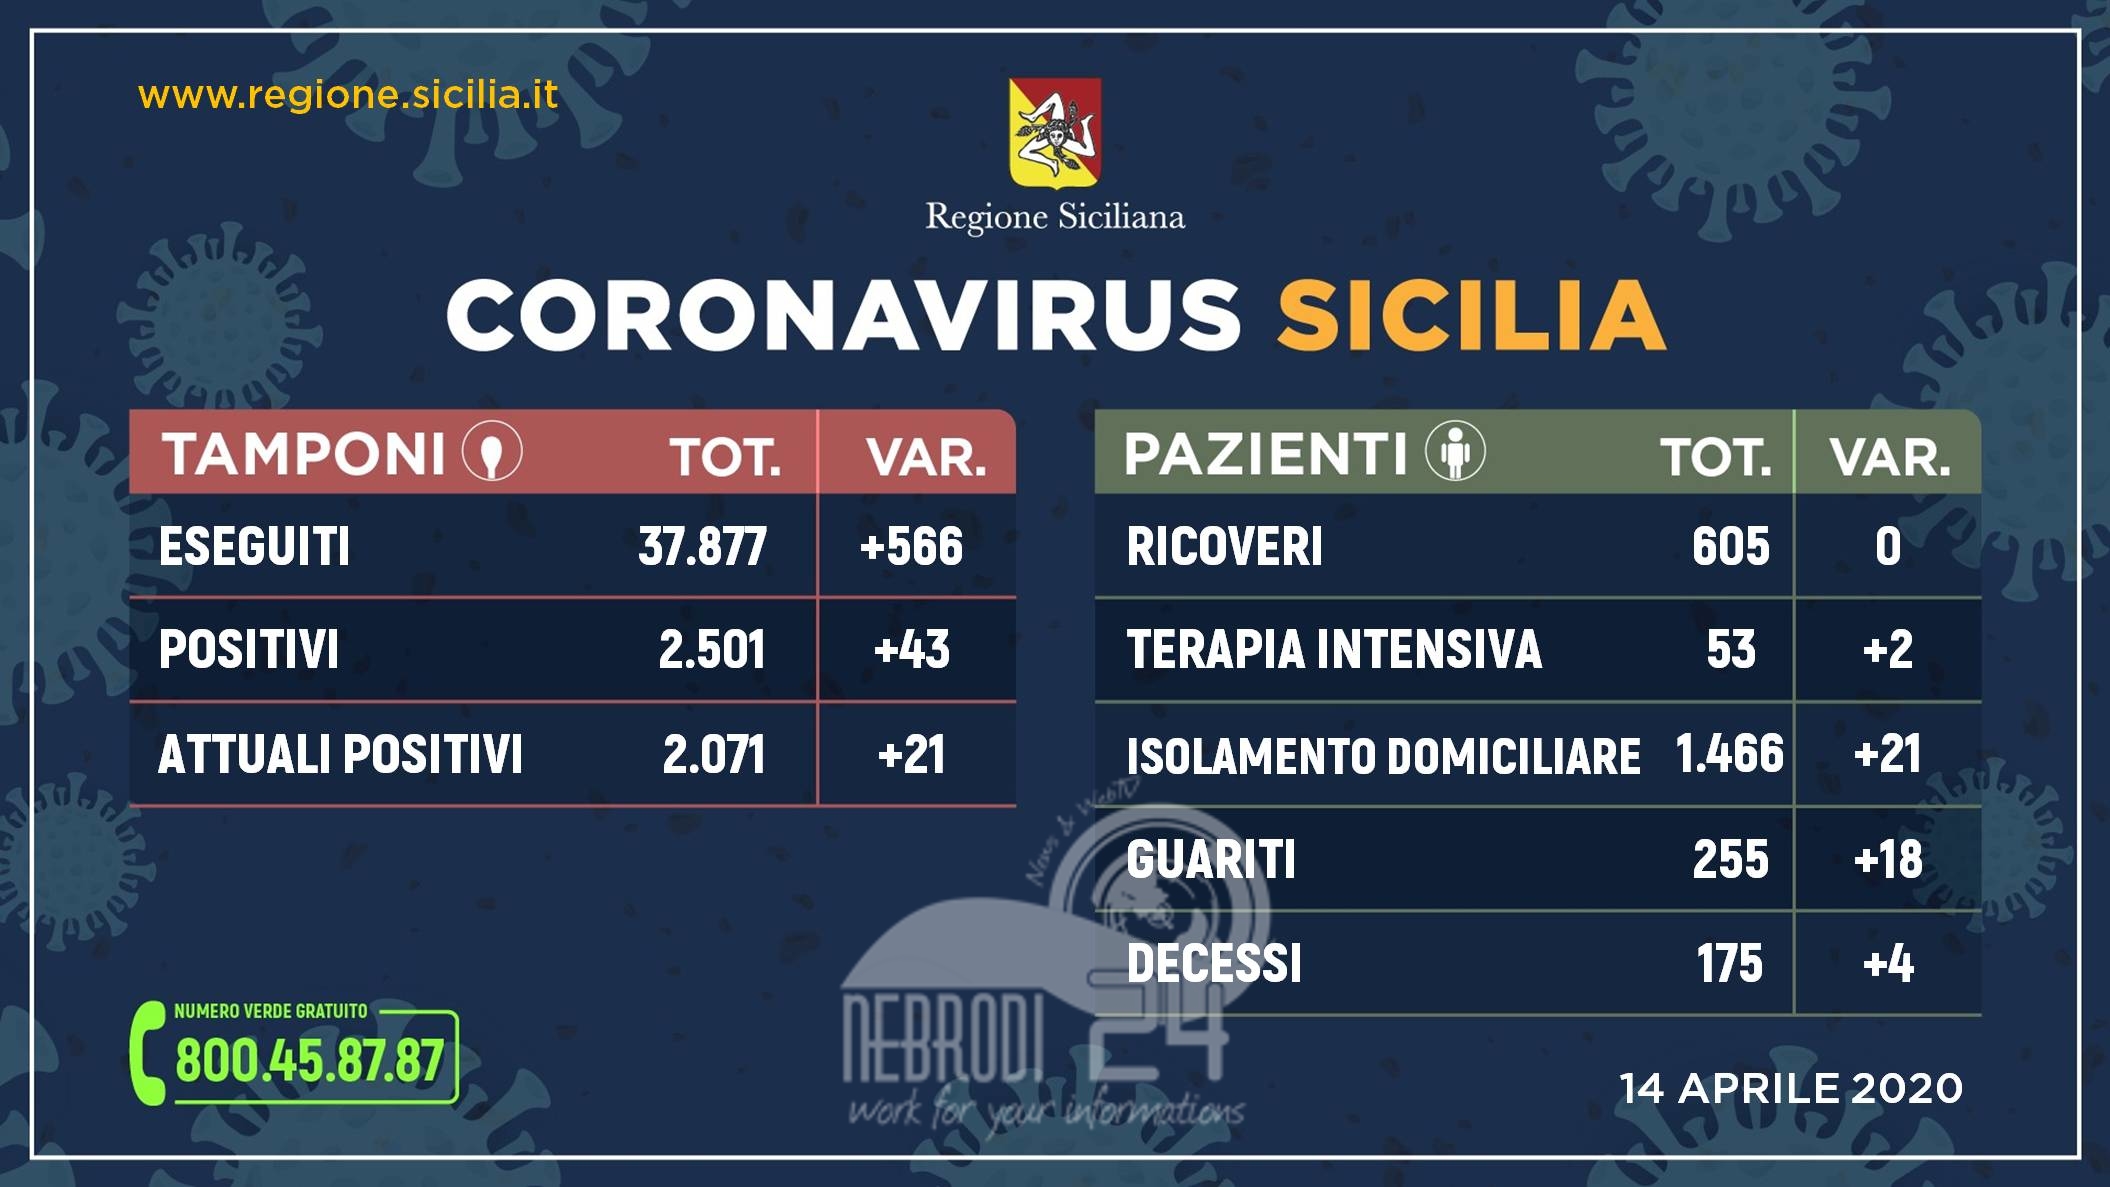 Coronavirus: l’aggiornamento in Sicilia, 2.071 positivi e 255 guariti (+21 rispetto a ieri).Tamponi +566 rispetto a ieri!